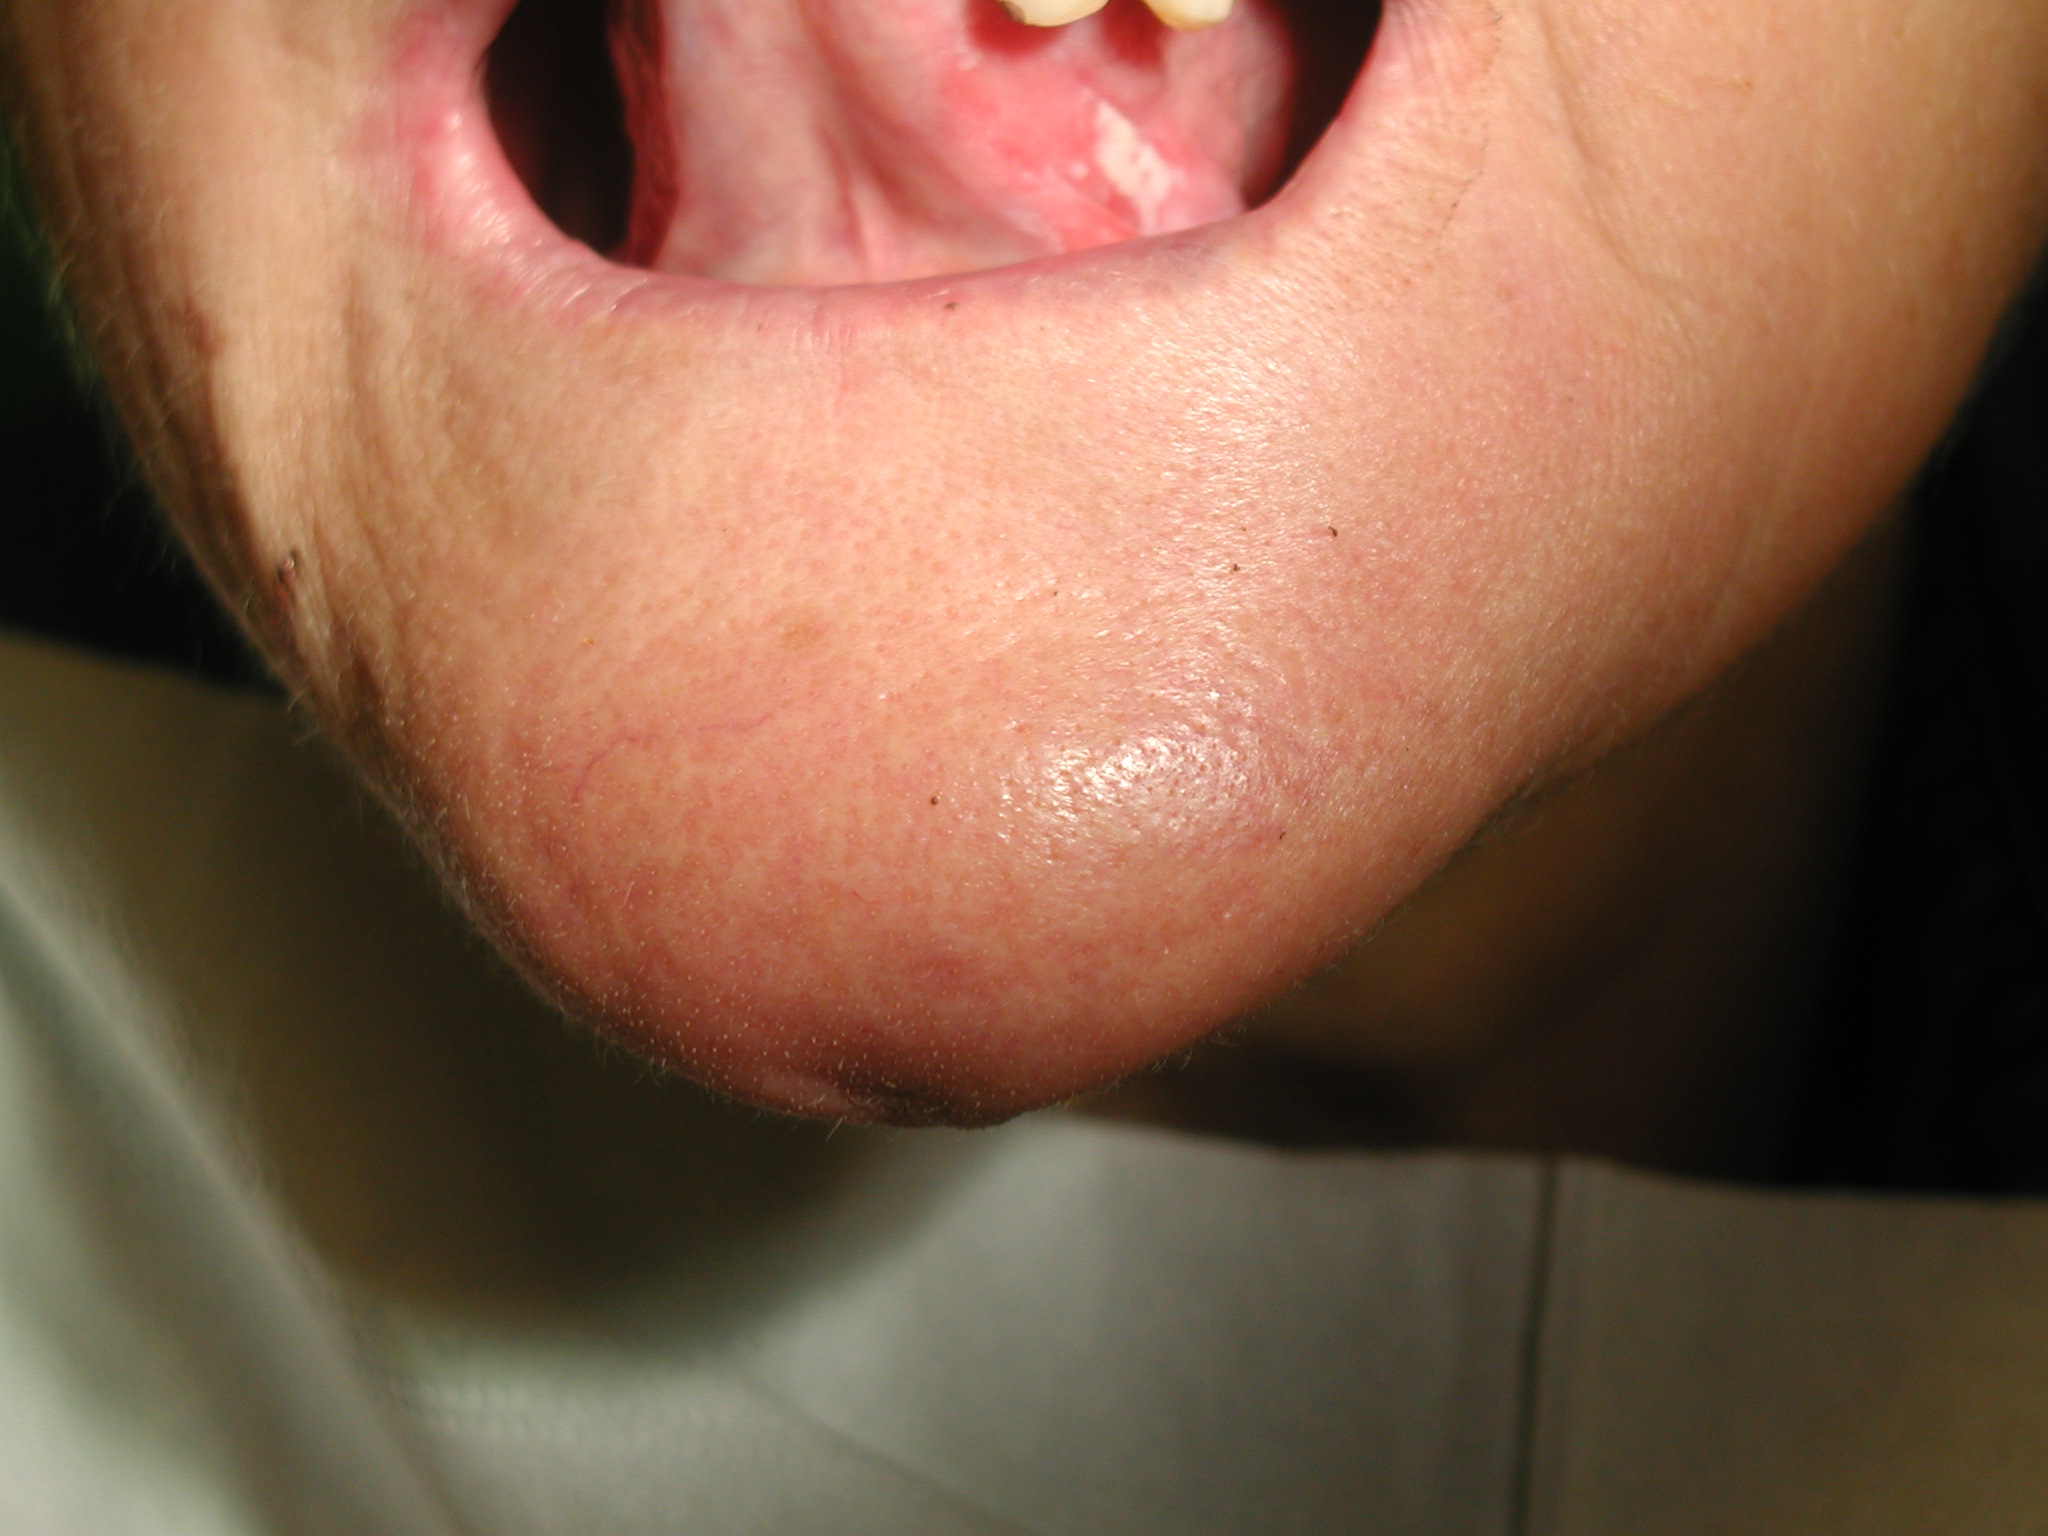 Lesione bianca della lingua da protesi incongrua